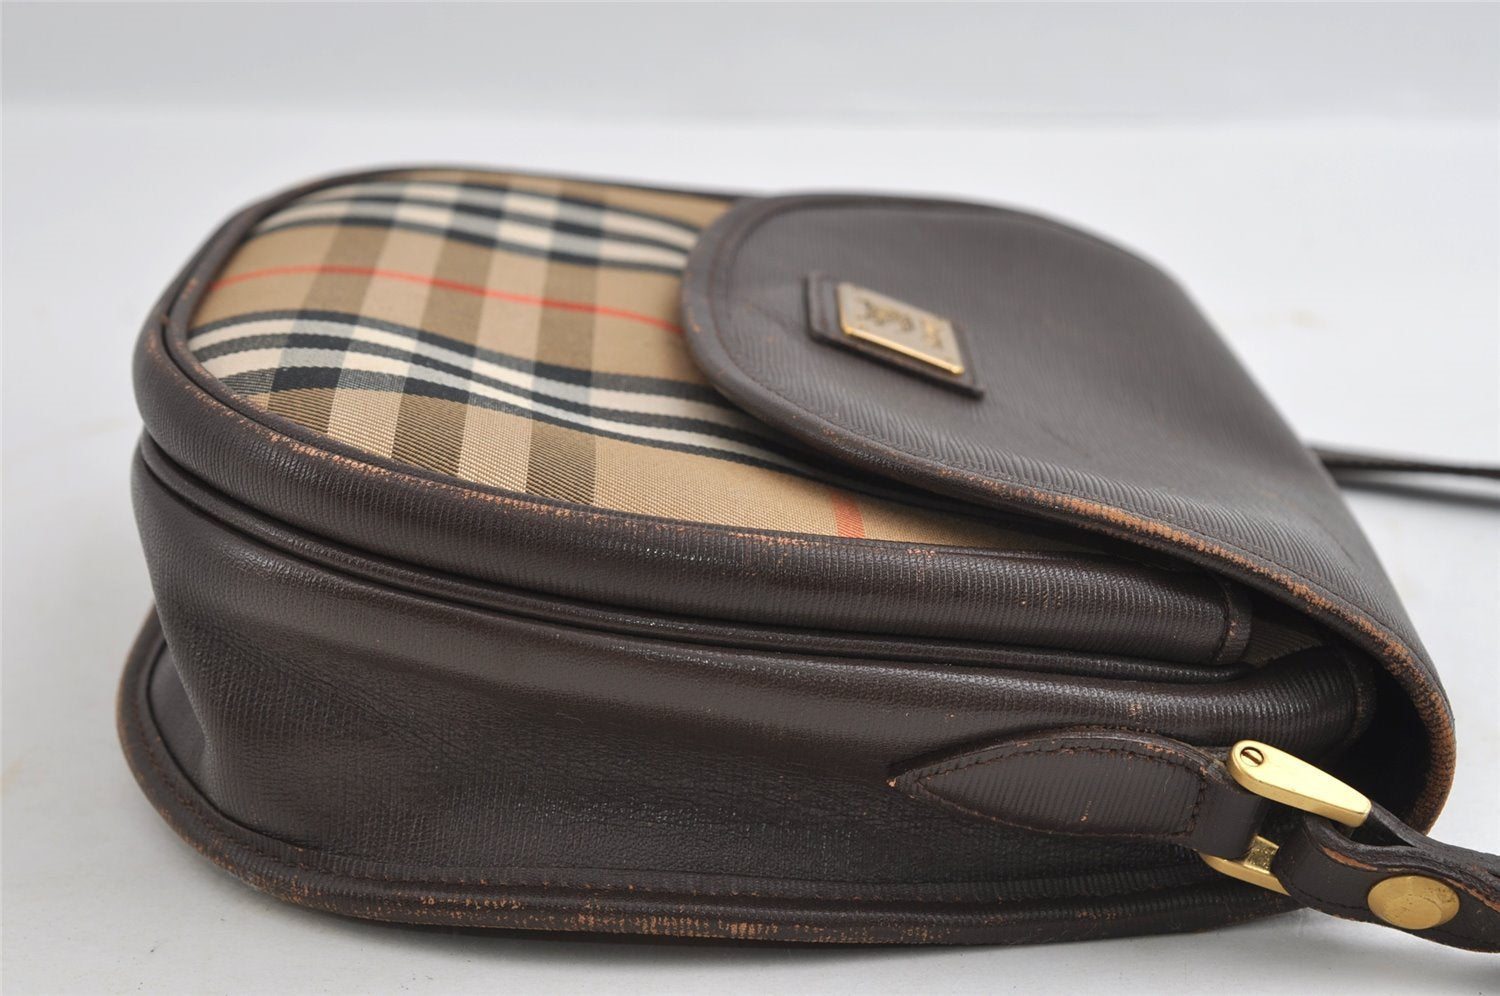 Authentic Burberrys Nova Check Shoulder Cross Bag Canvas Leather Beige 5868I